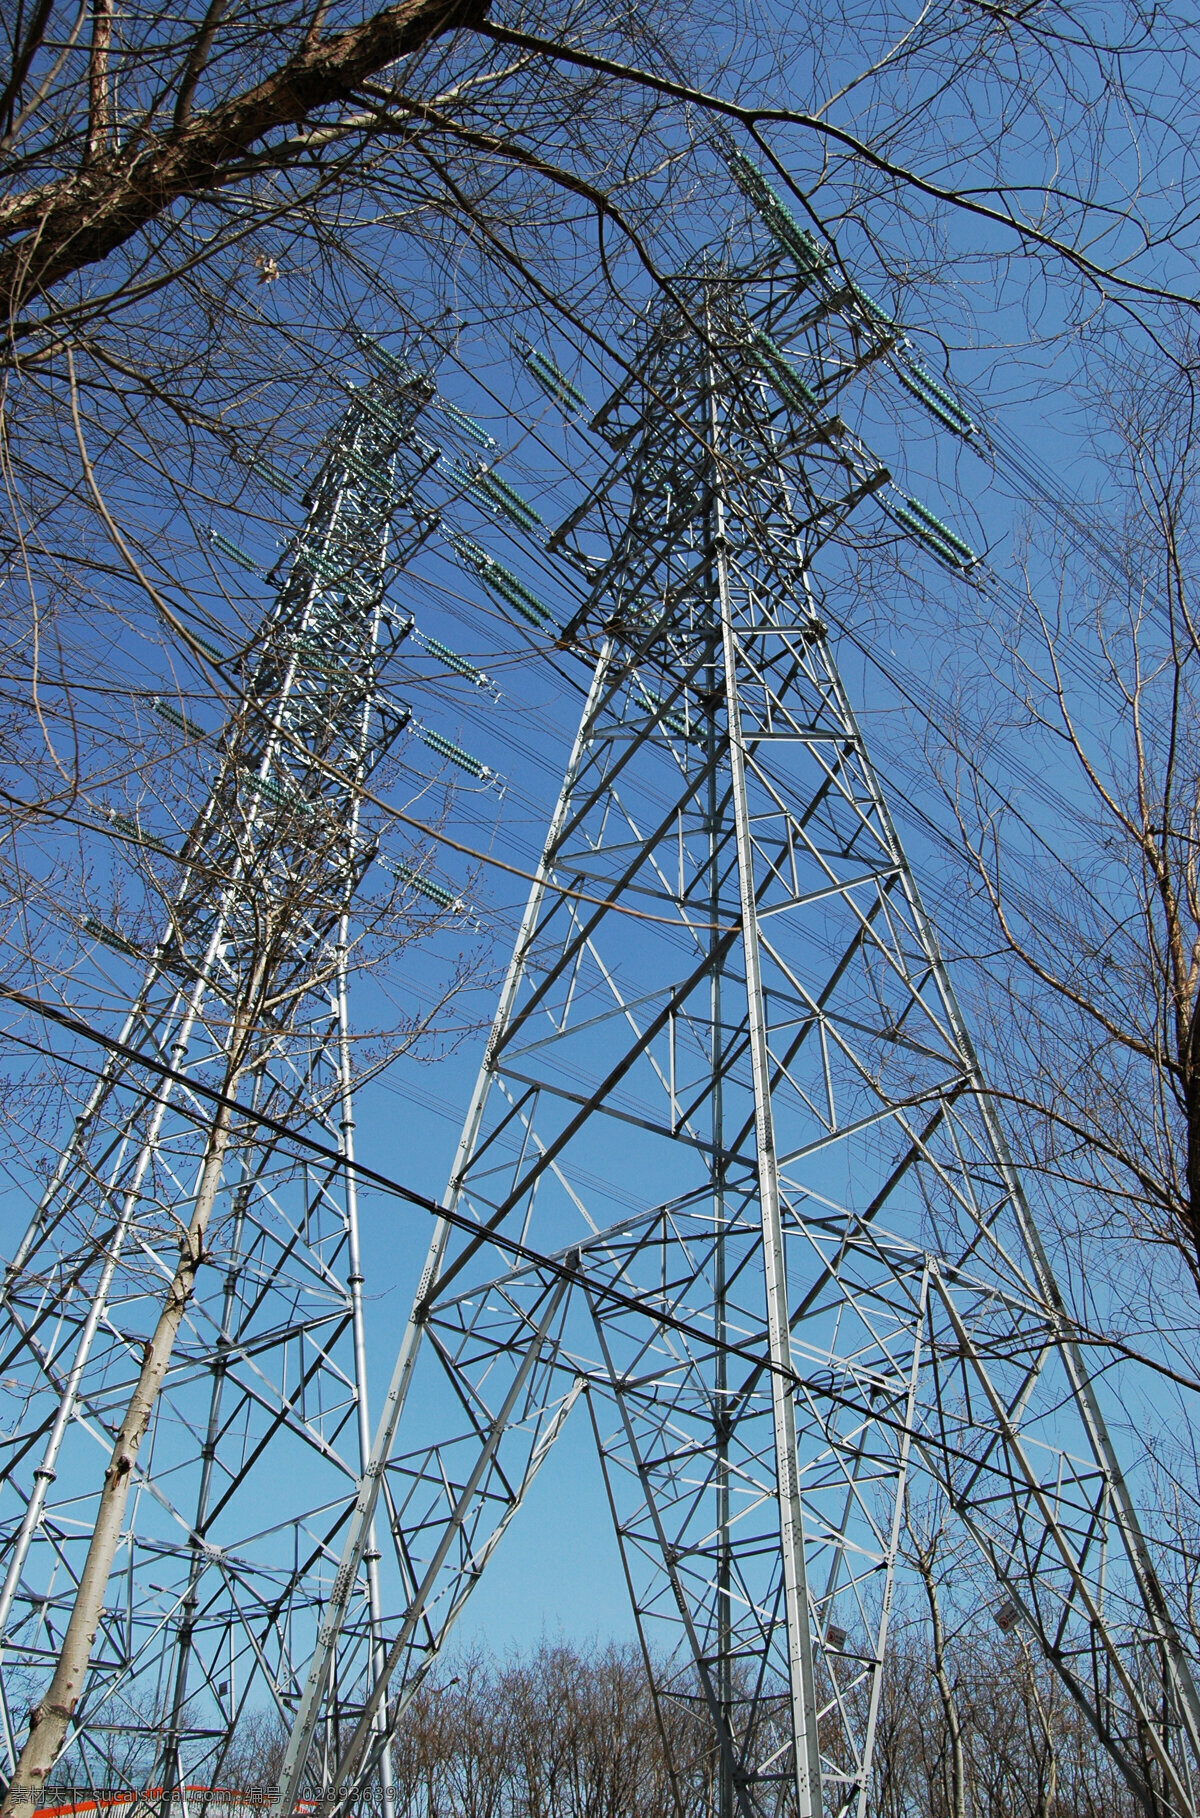 高压输电塔 输电线路 电线 高压电 高压电线输送 电线杆 蓝天 背景 铁塔 信号塔 工业生产 现代科技